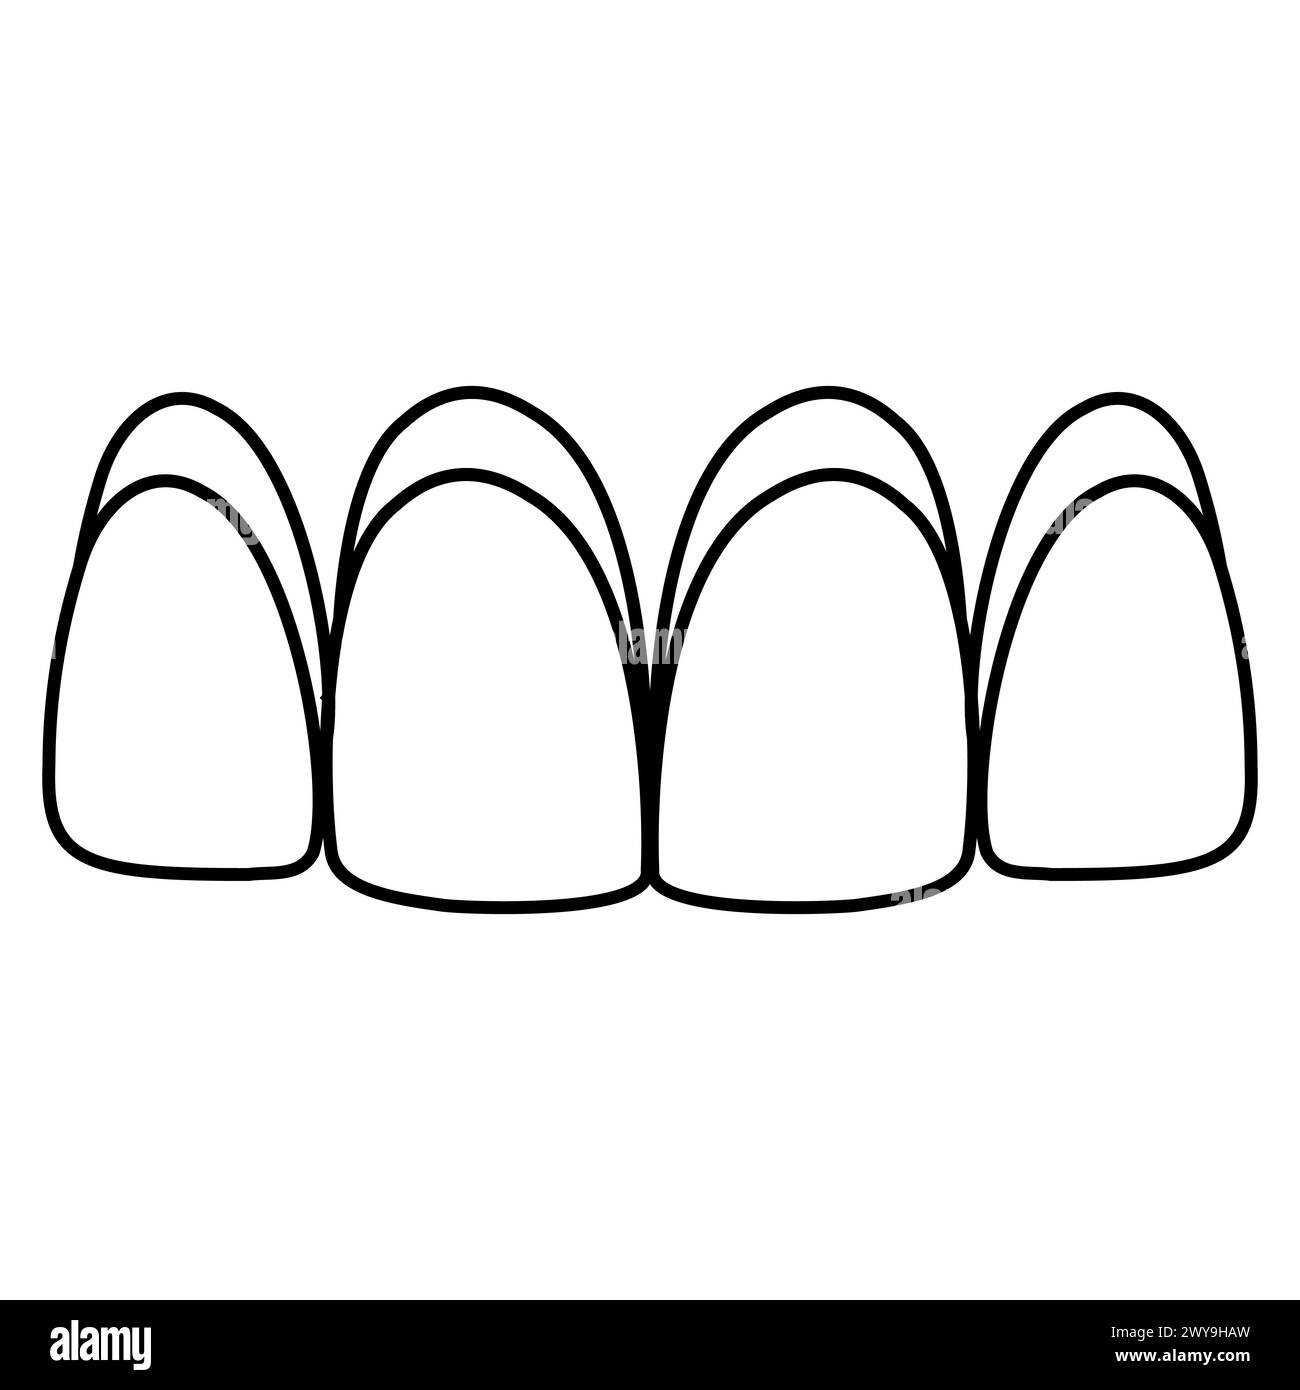 Dental veneers icon, aesthetic prosthetics of front teeth, crown veneer Stock Vector